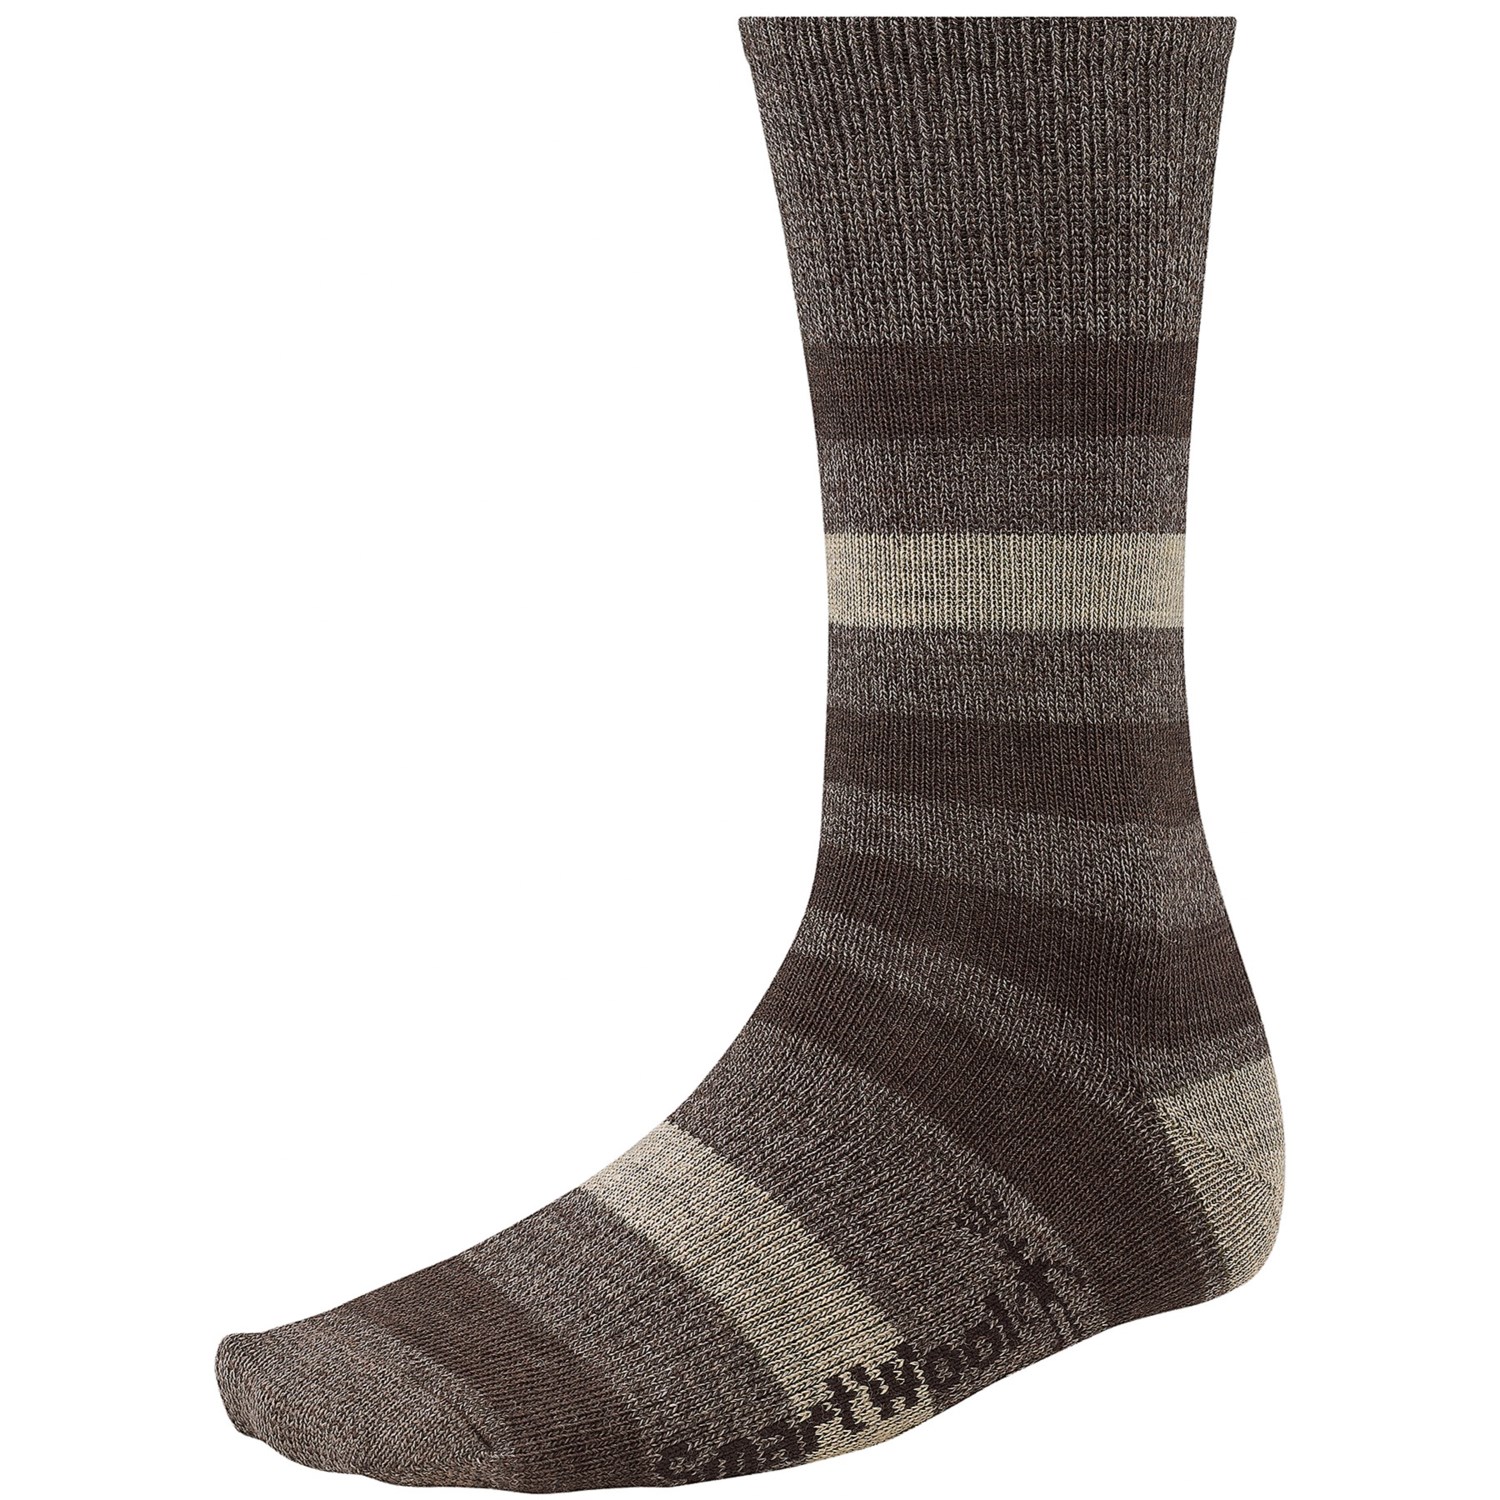 SmartWool Trekker Crew Socks  Merino Wool For Men and Women in 